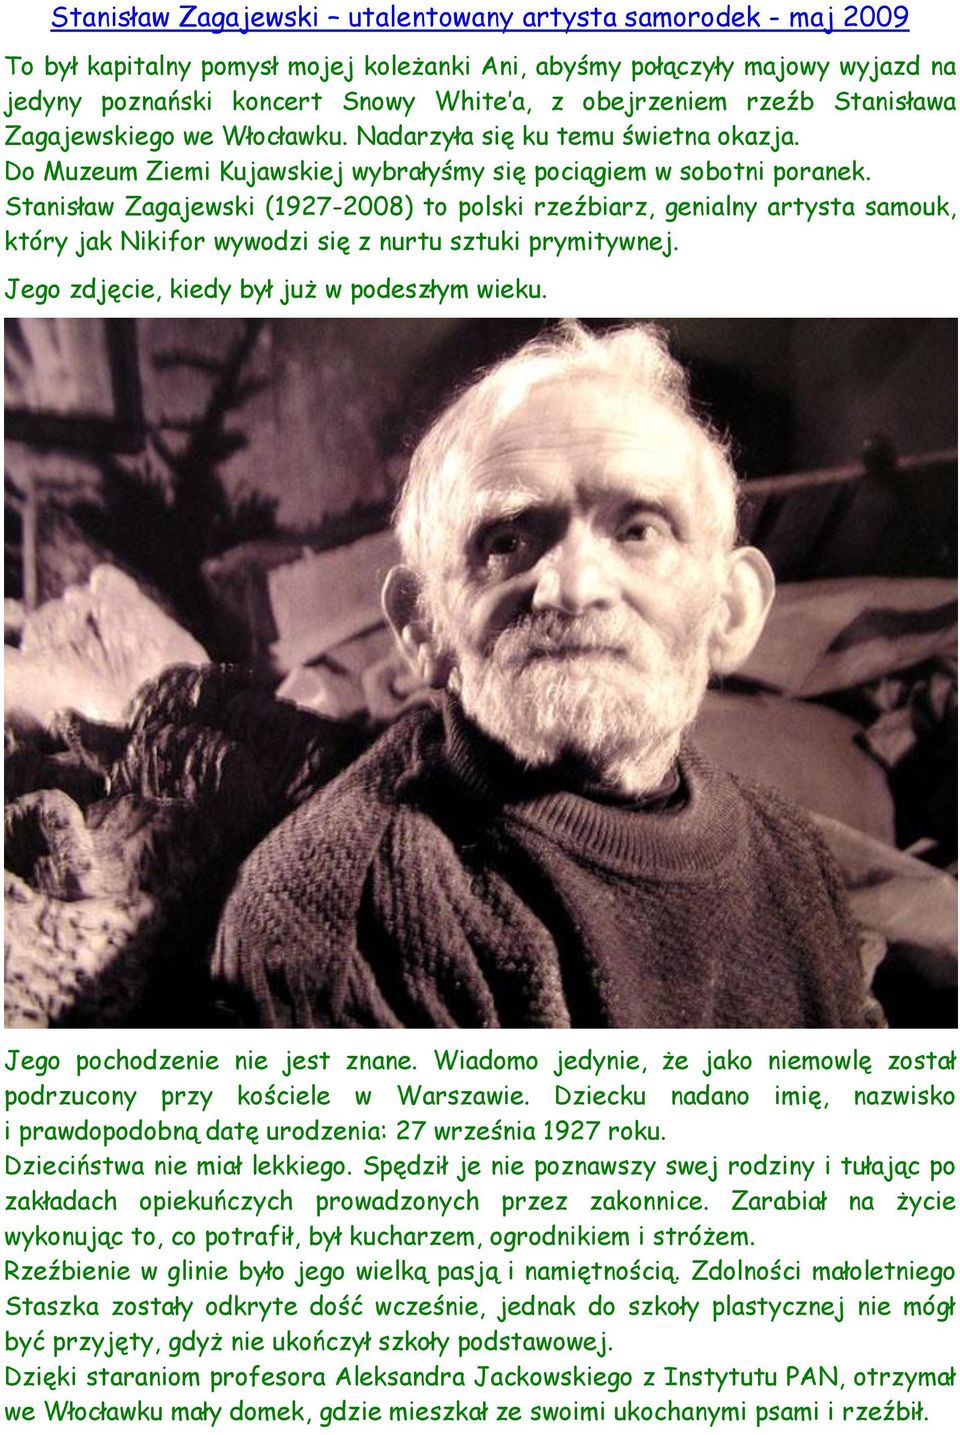 Stanisław Zagajewski (1927-2008) to polski rzeźbiarz, genialny artysta samouk, który jak Nikifor wywodzi się z nurtu sztuki prymitywnej. Jego zdjęcie, kiedy był już w podeszłym wieku.